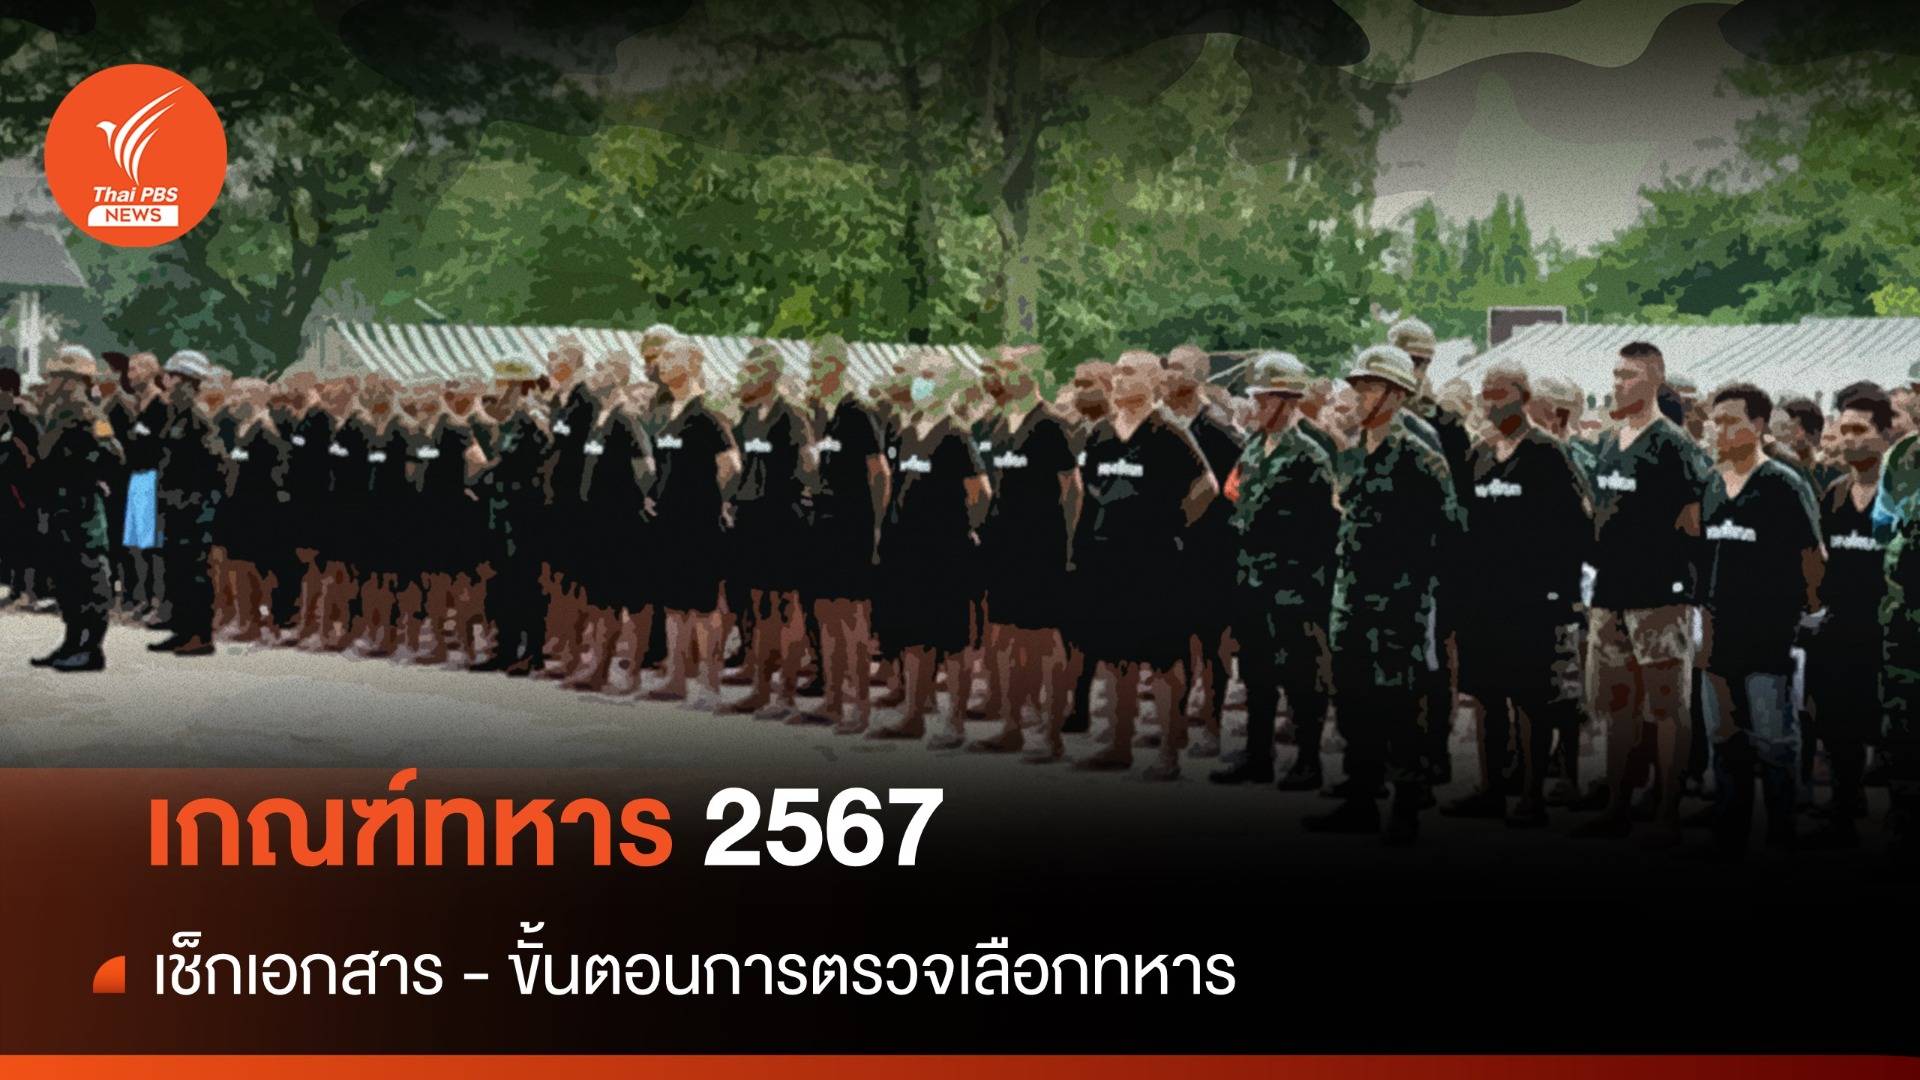 เกณฑ์ทหาร 2567 เช็กวัน รายละเอียด ขั้นตอนการตรวจเลือกทหาร